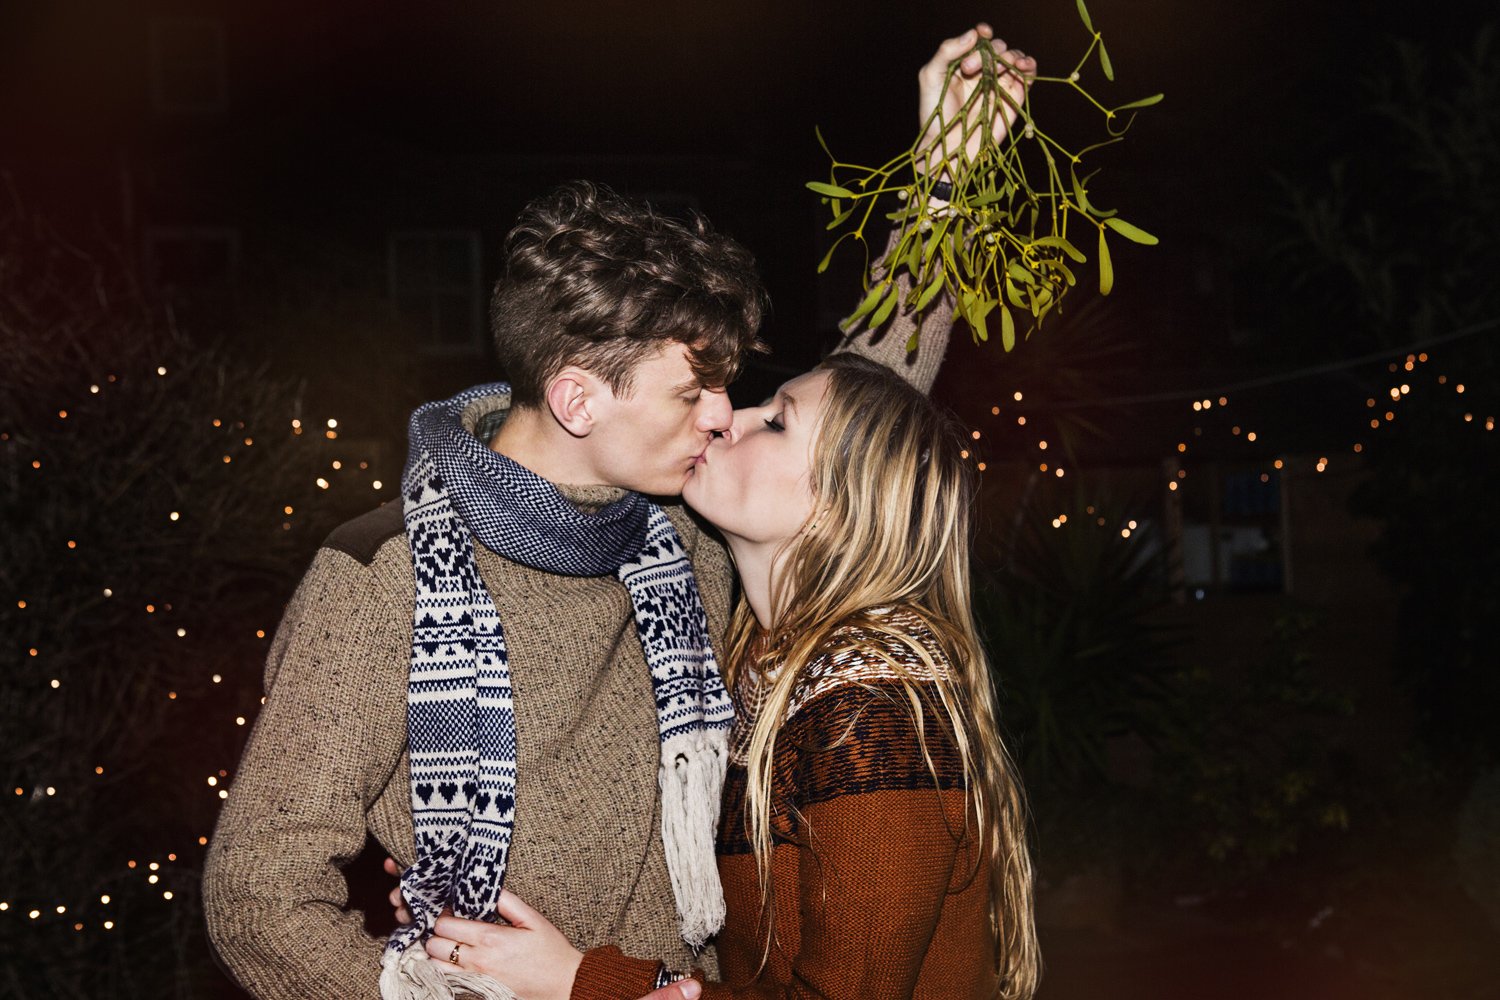 kissing under the mistletoe